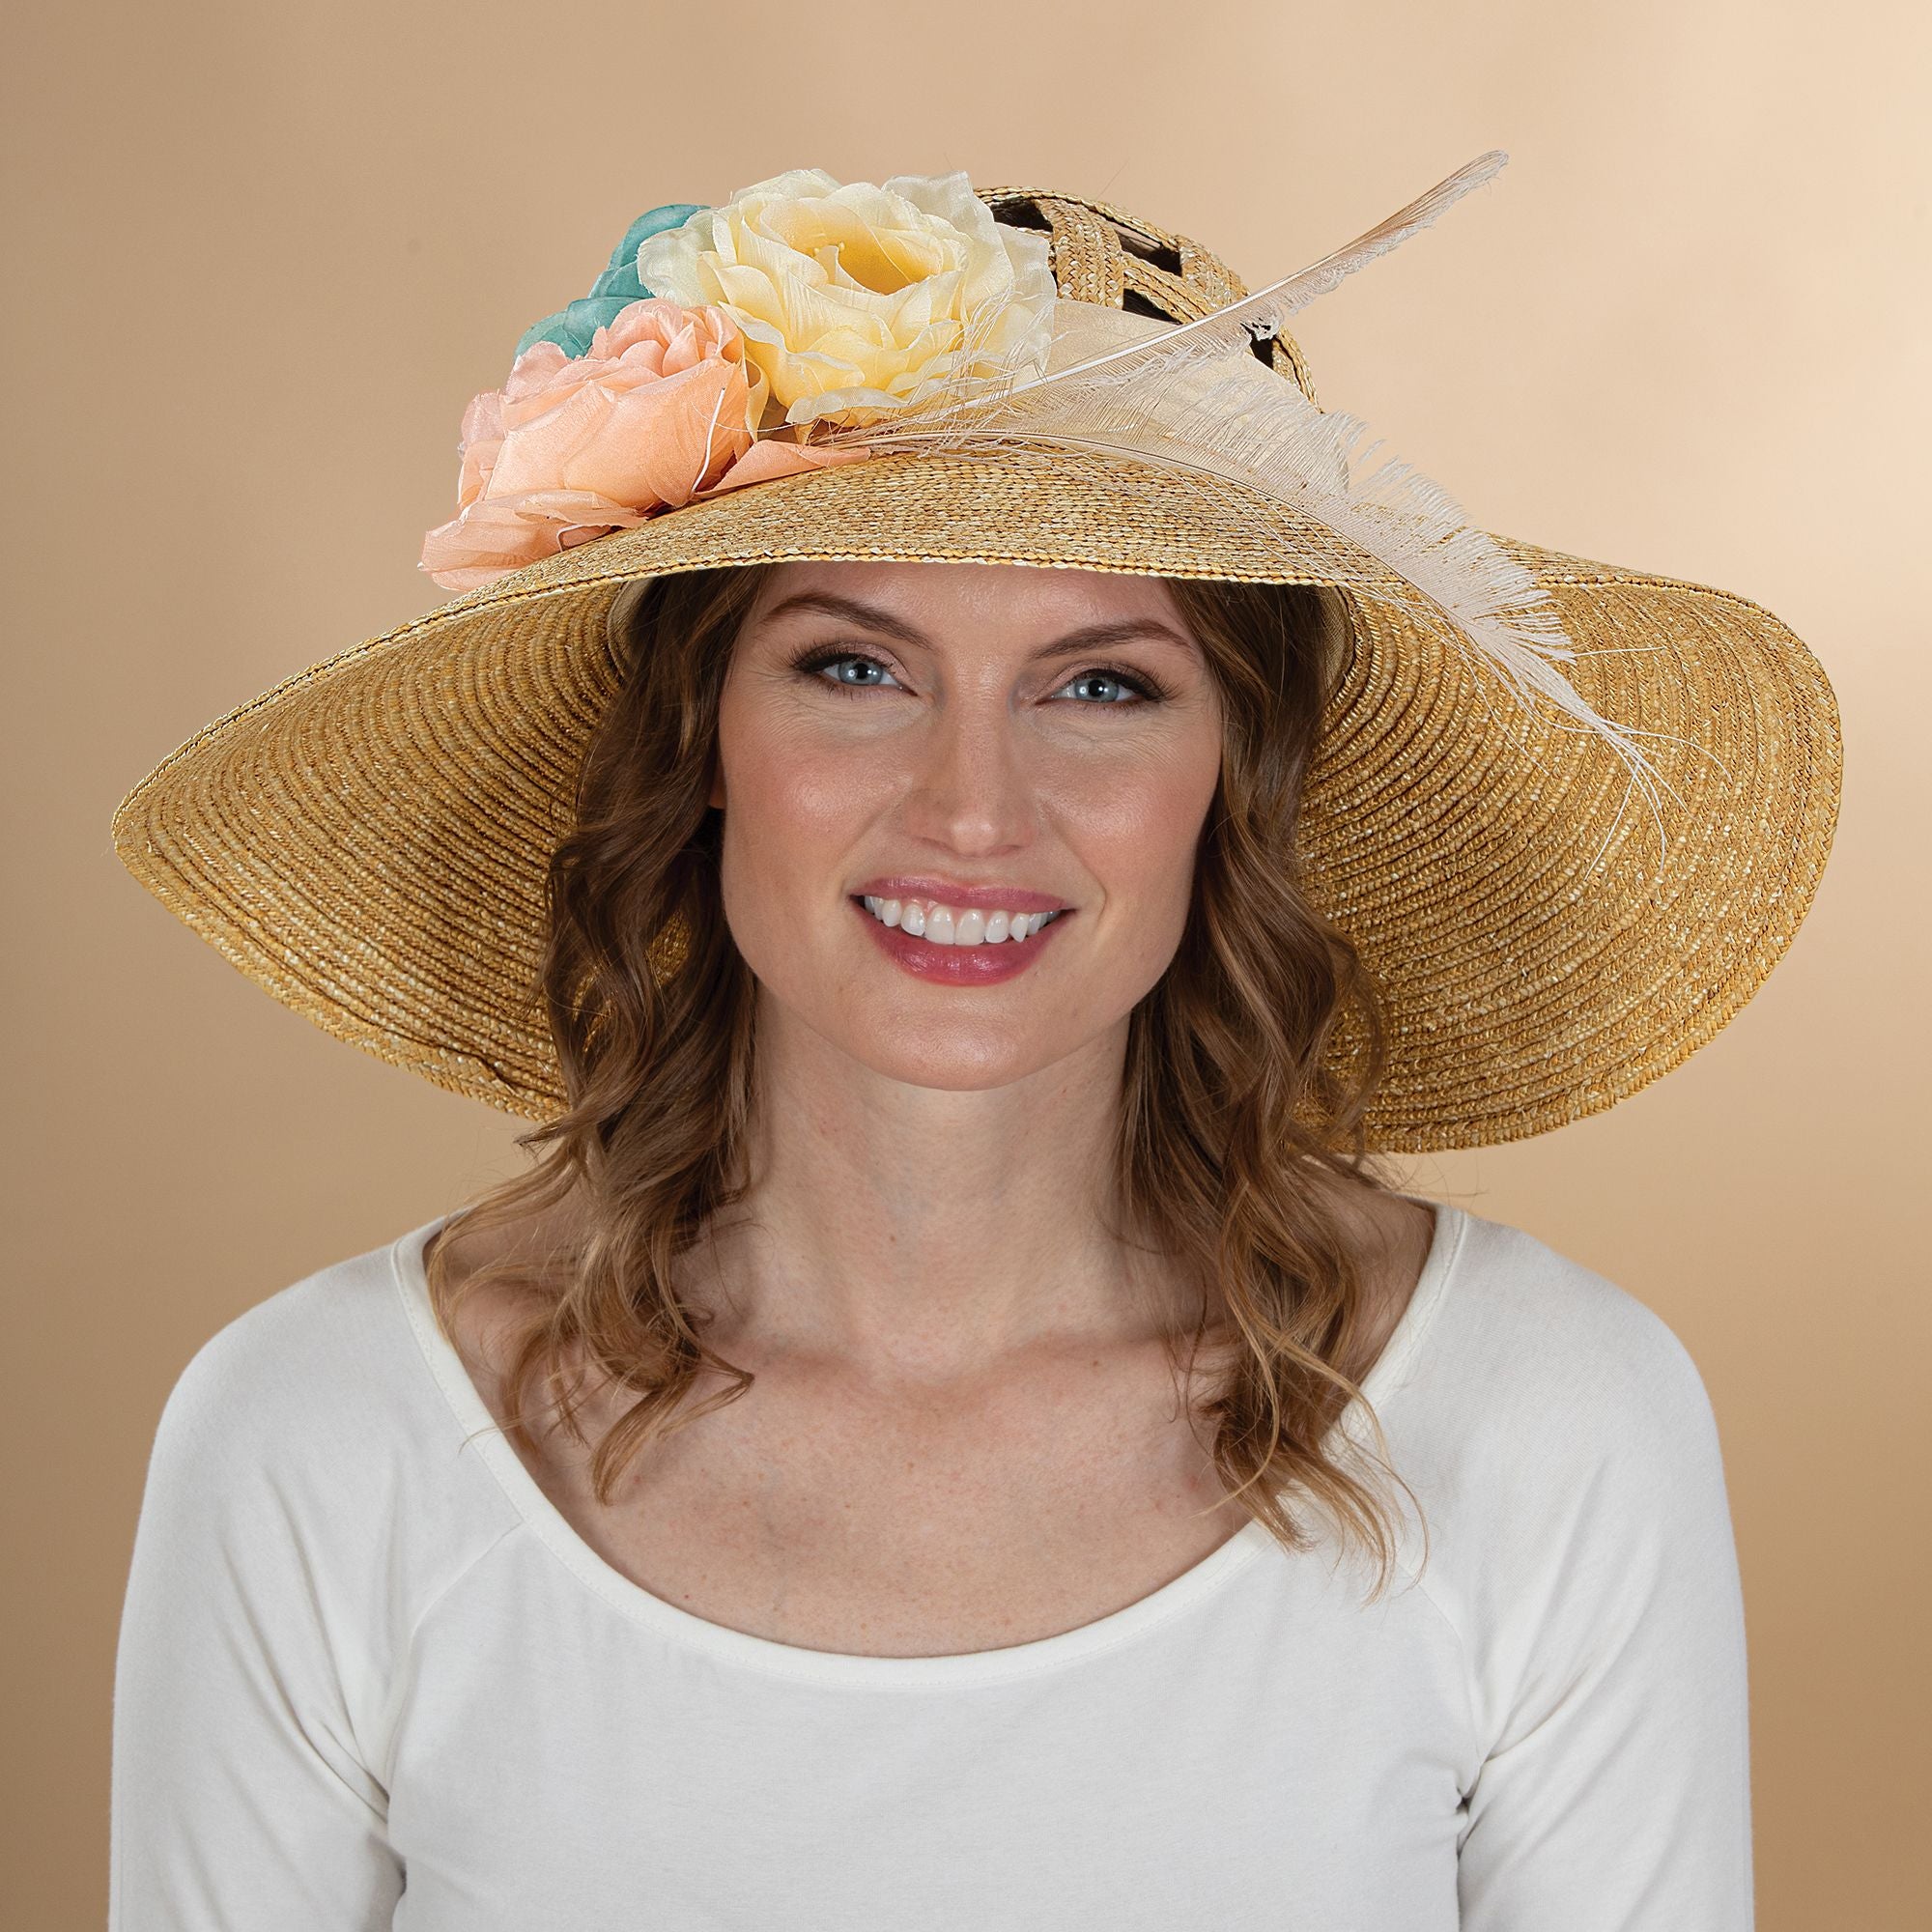 Susannah Floral Basketweave Sun Hat